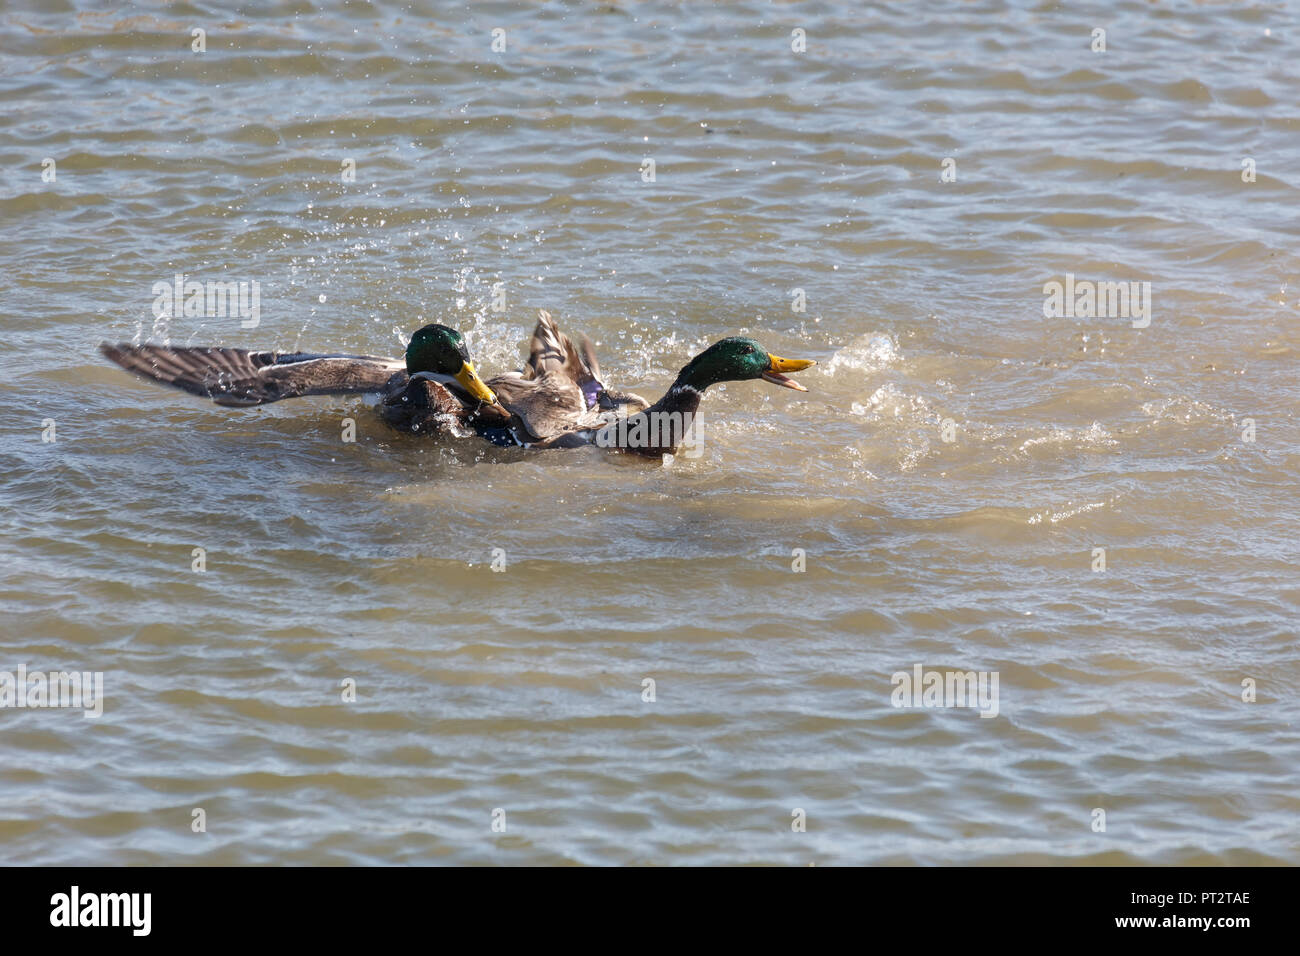 Male Mallard Ducks fight for female in Vancouver BC Canada. Stock Photo